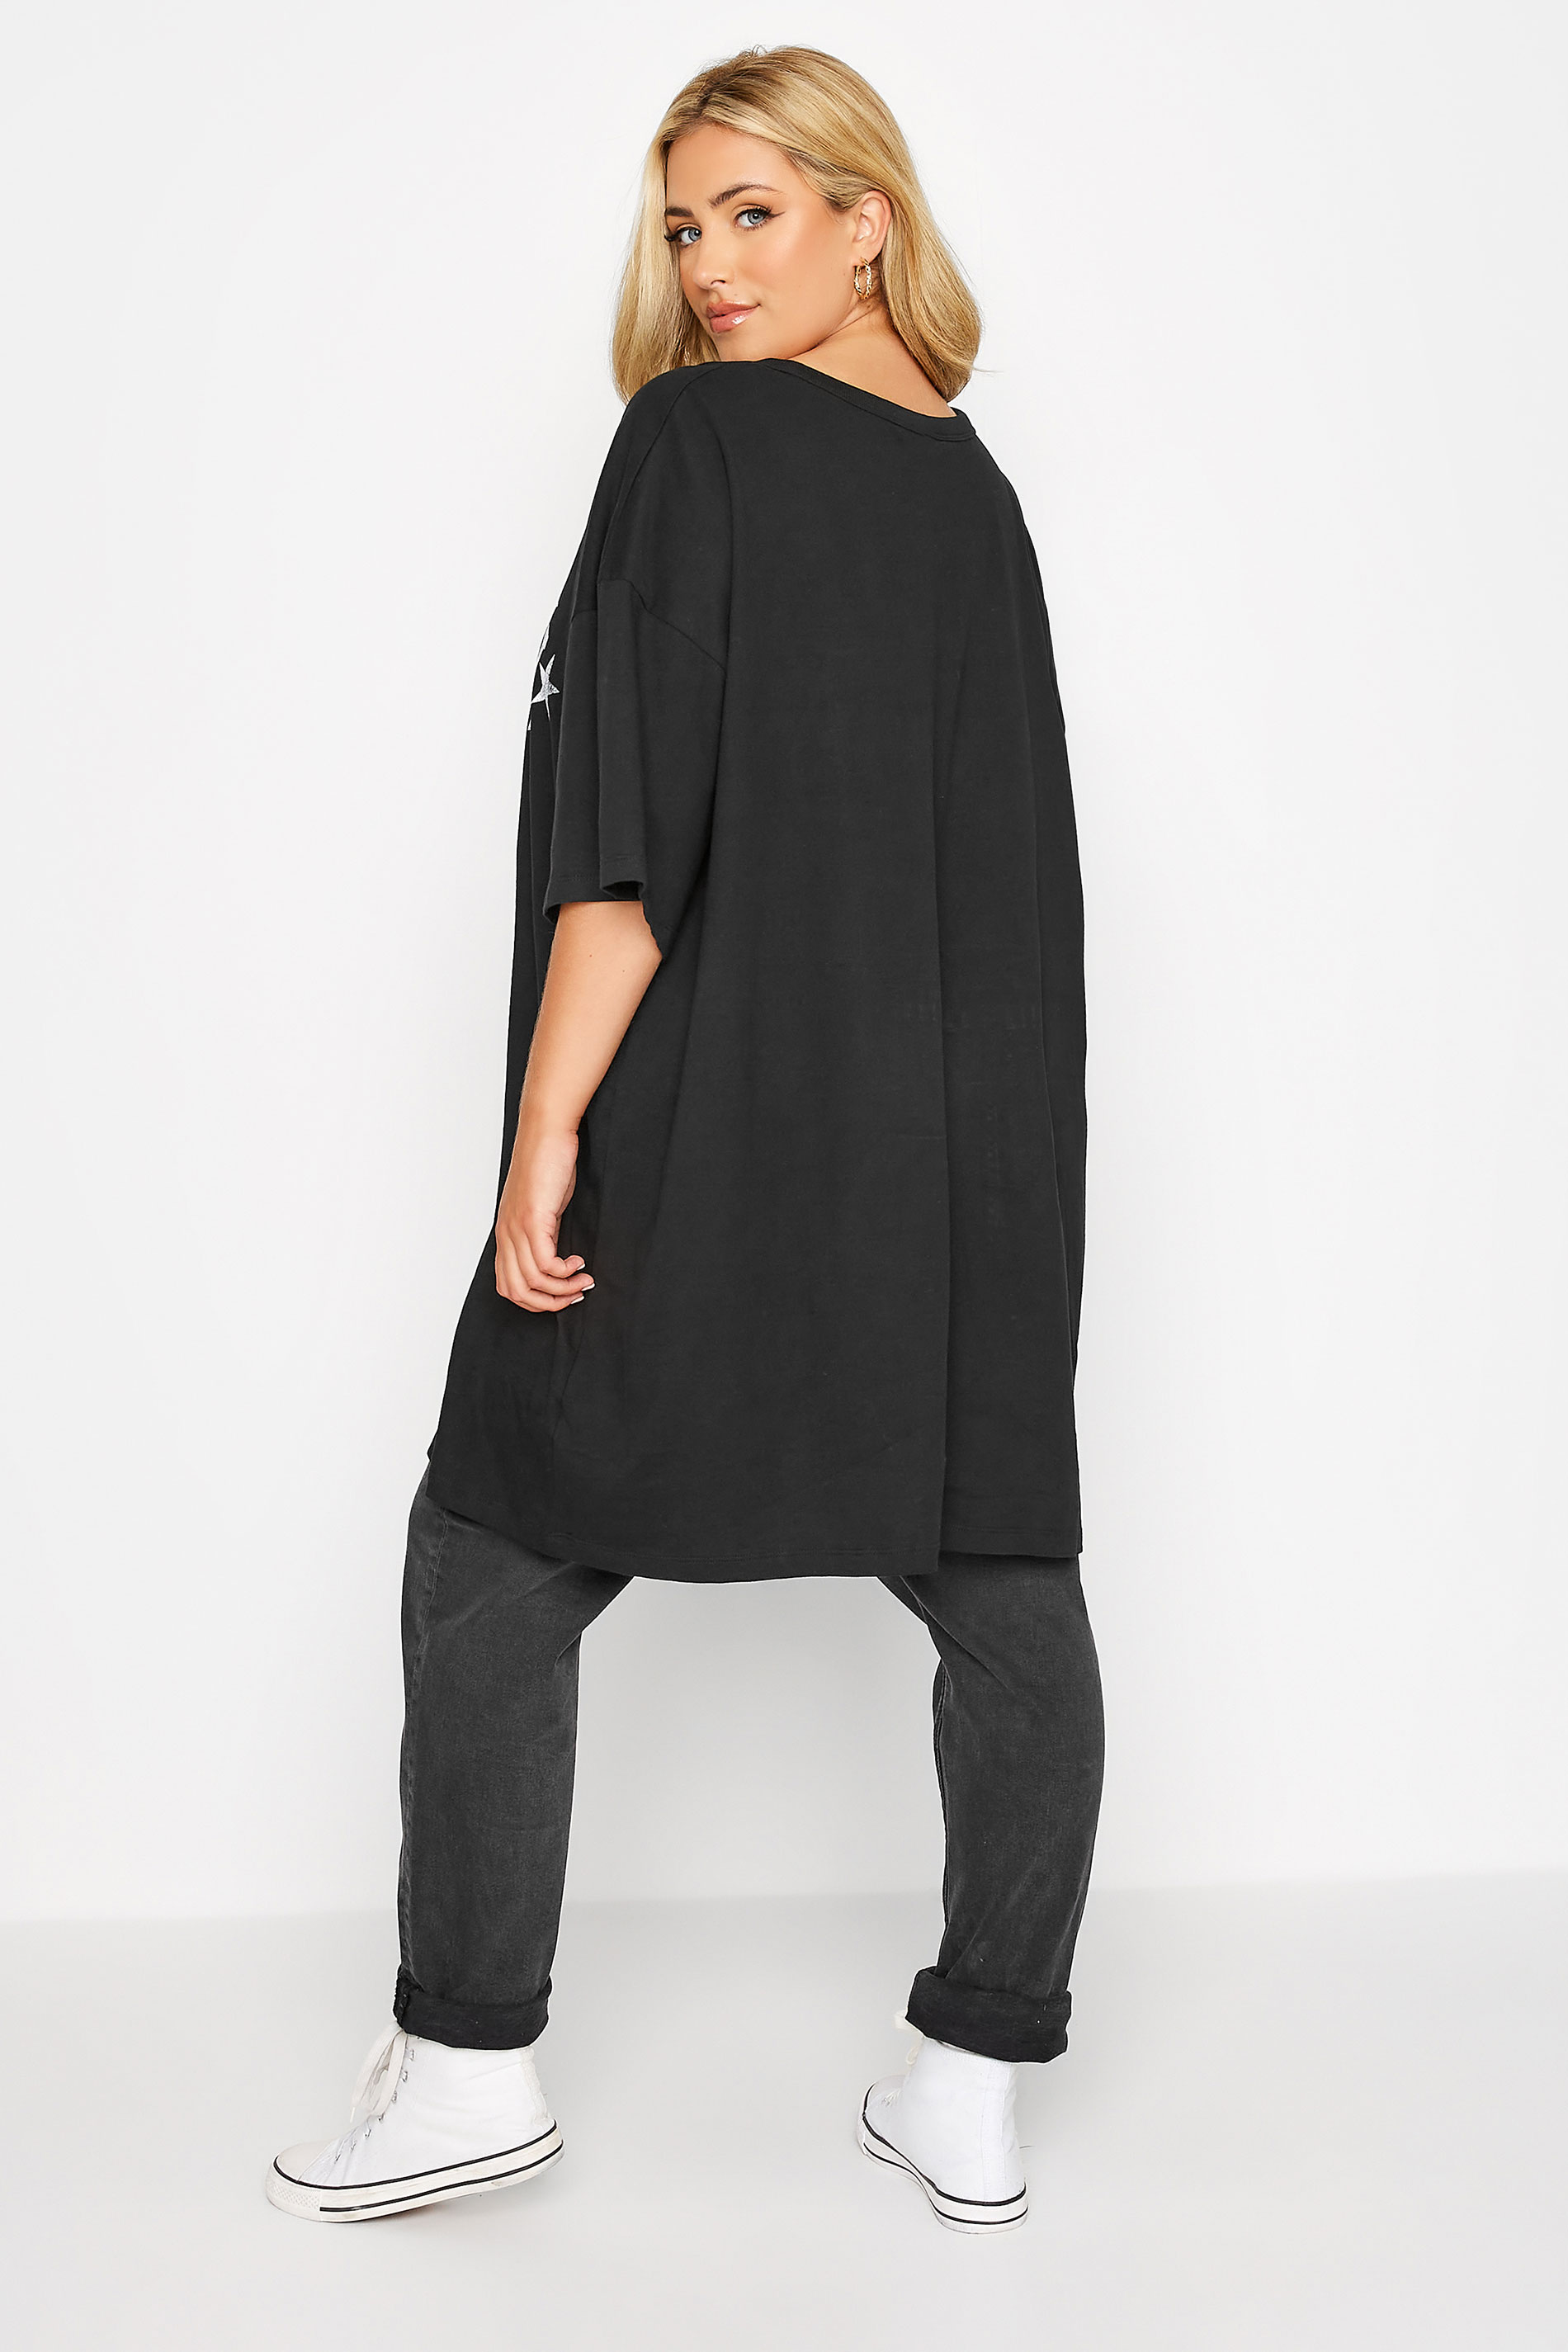 Plus Size Black 'New York' Oversized Tunic T-Shirt Dress | Yours Clothing 3